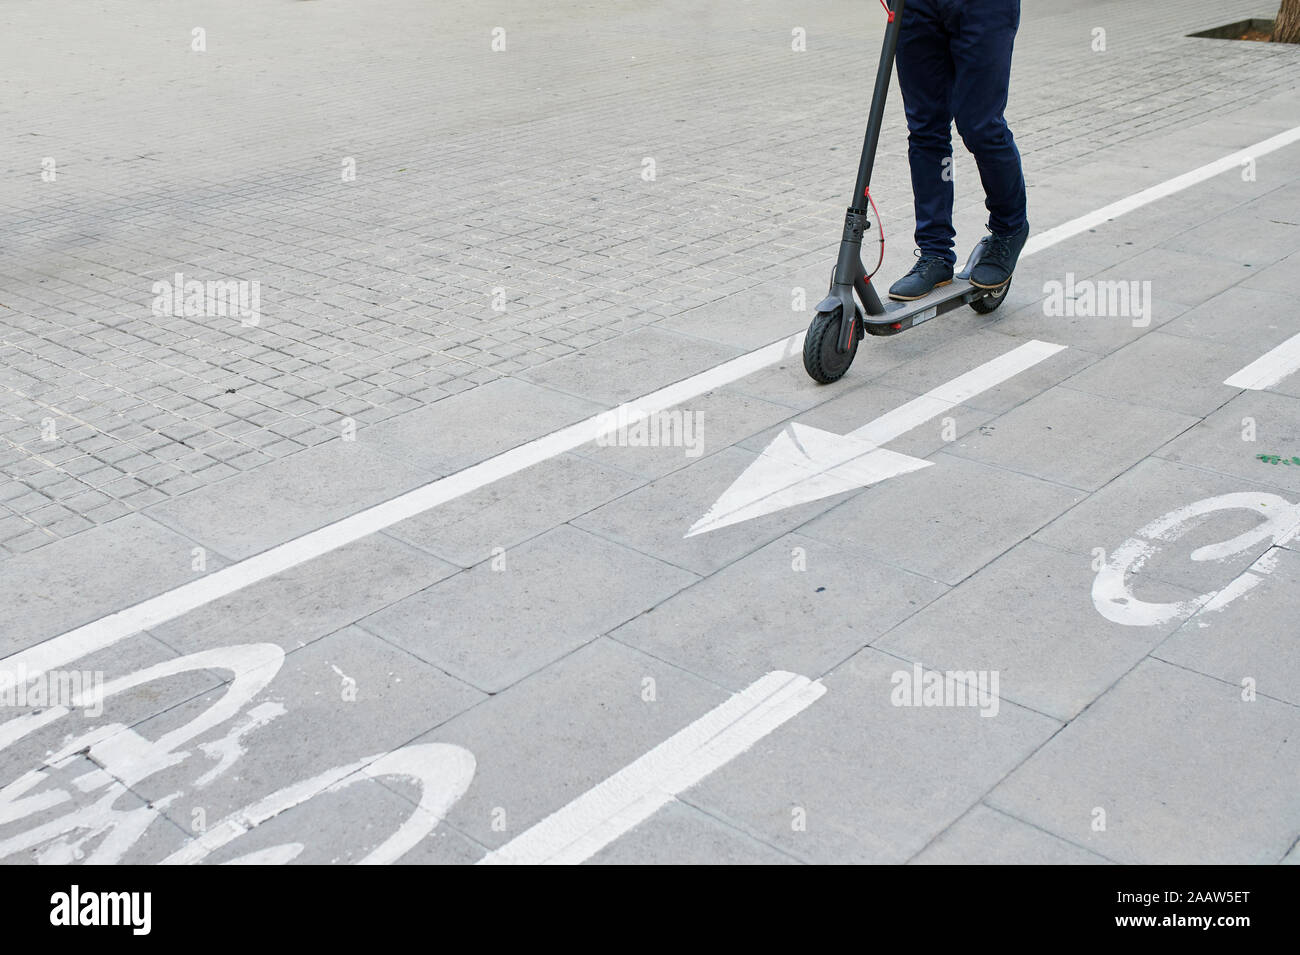 Les jambes de l'homme monté sur l'e-scooter sur piste cyclable dans la ville Banque D'Images